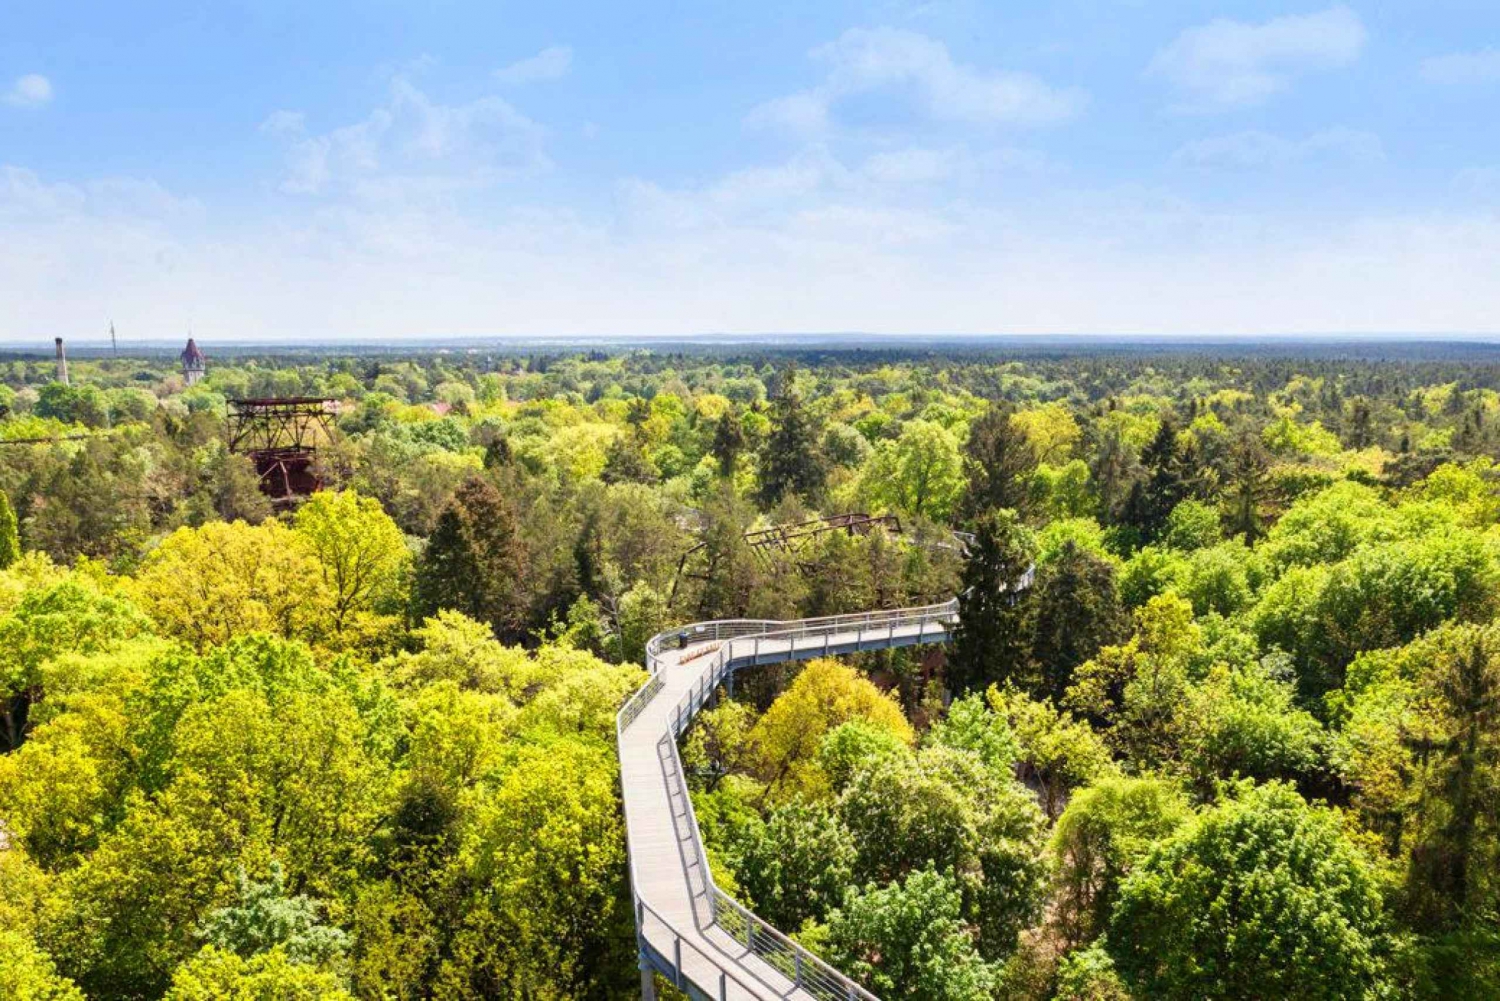 Baum&Zeit Beelitz-Heilstätten: Tree Top Walk Ticket de entrada